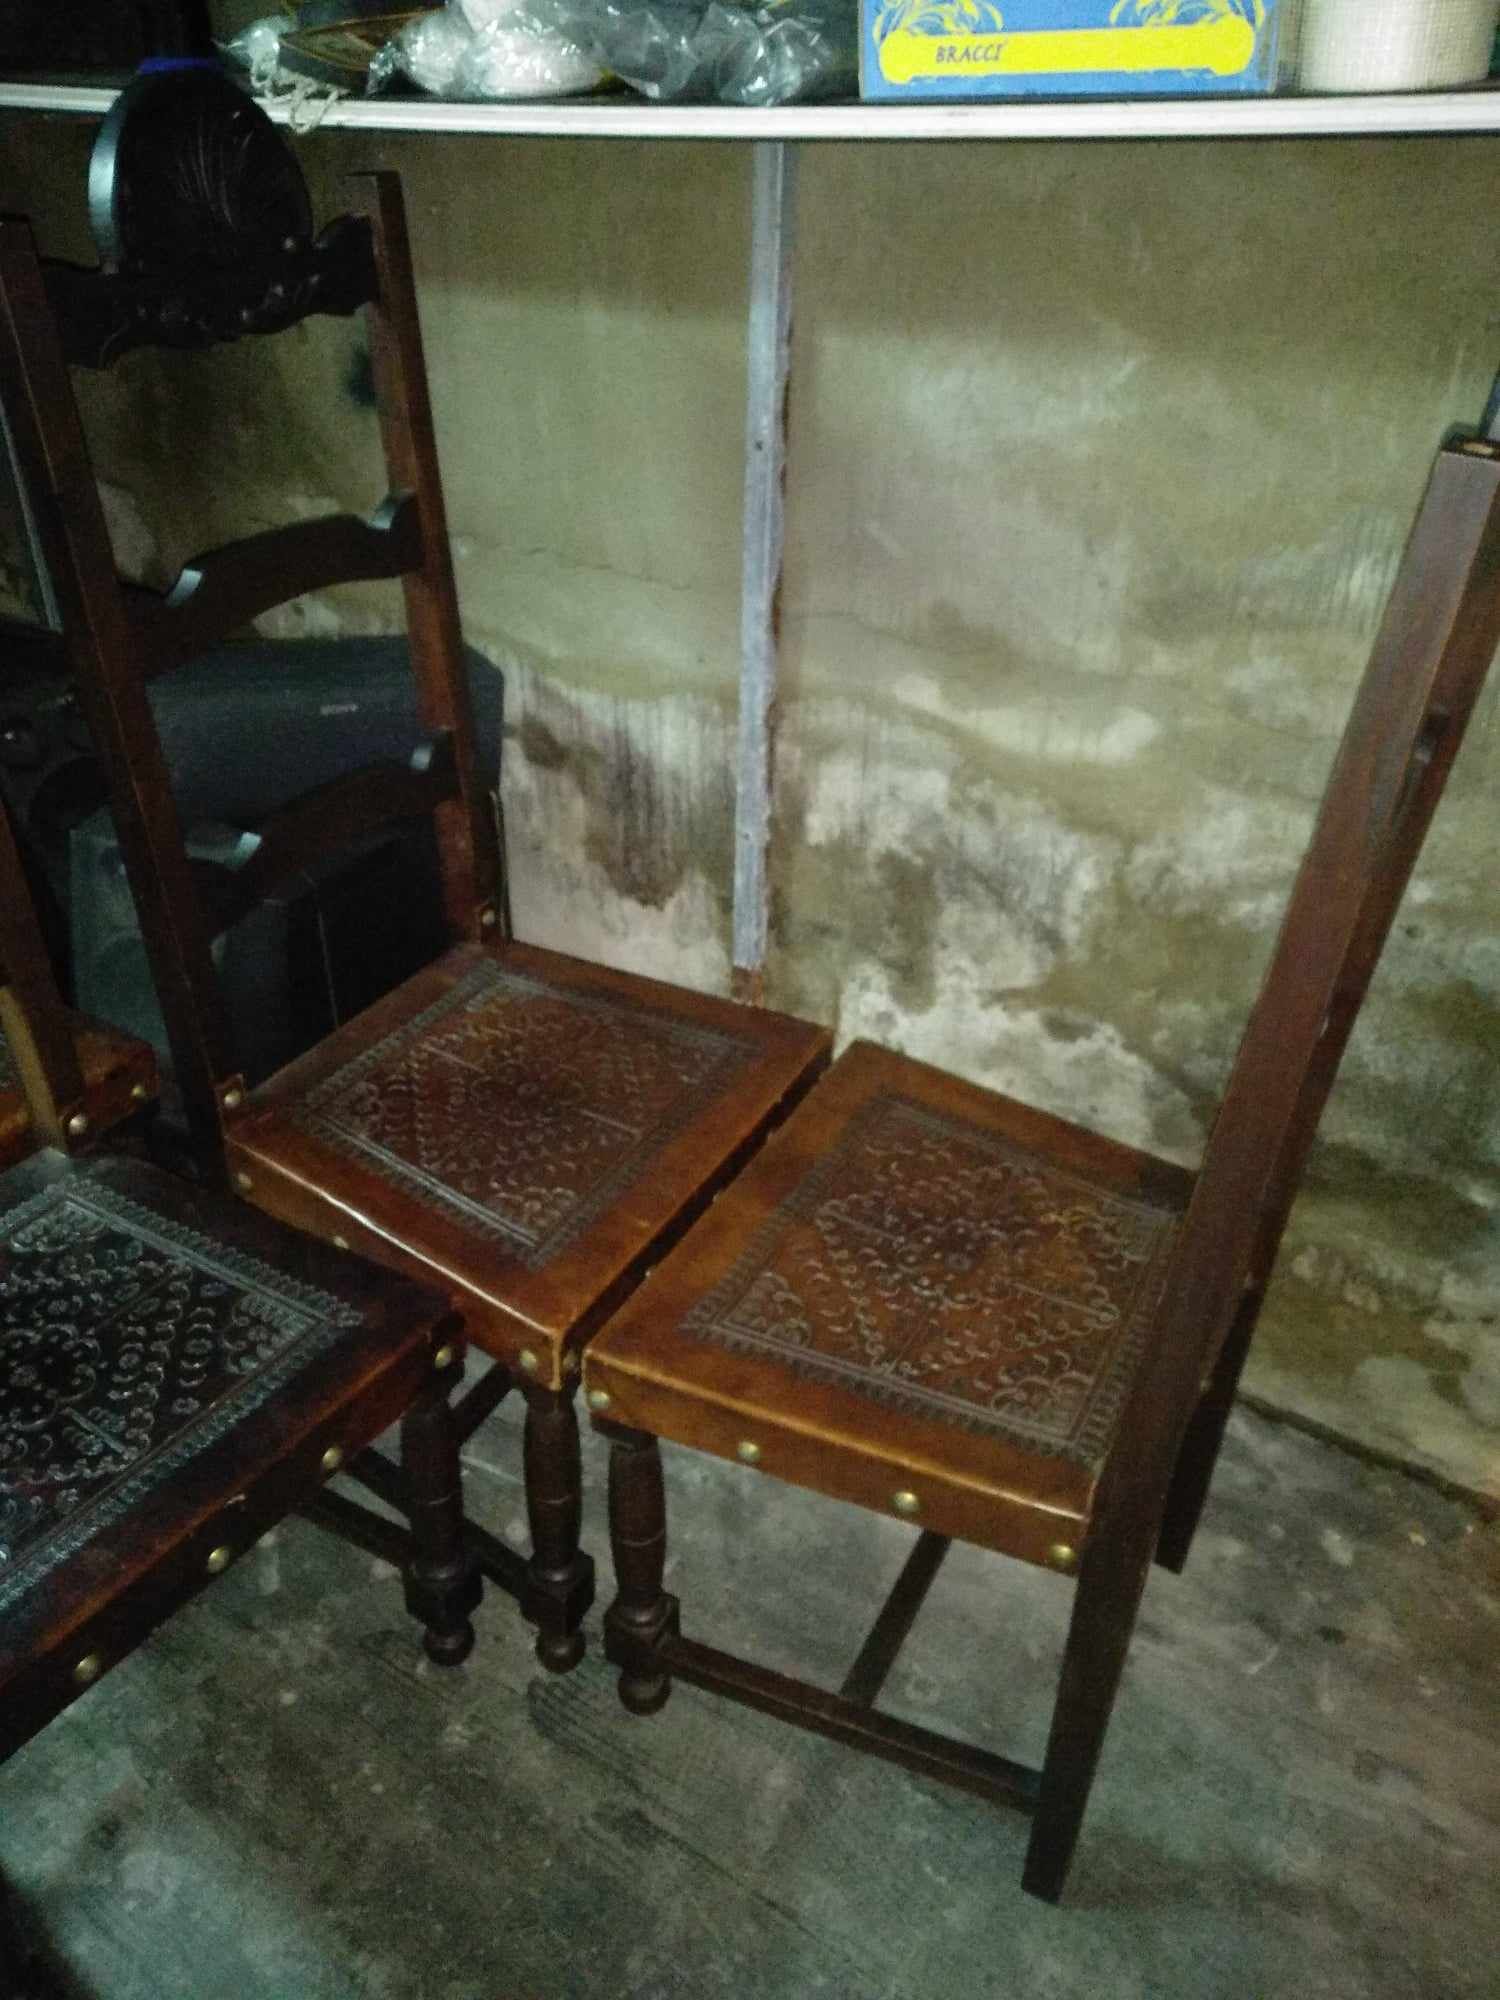 Mesa e cadeiras de madeira